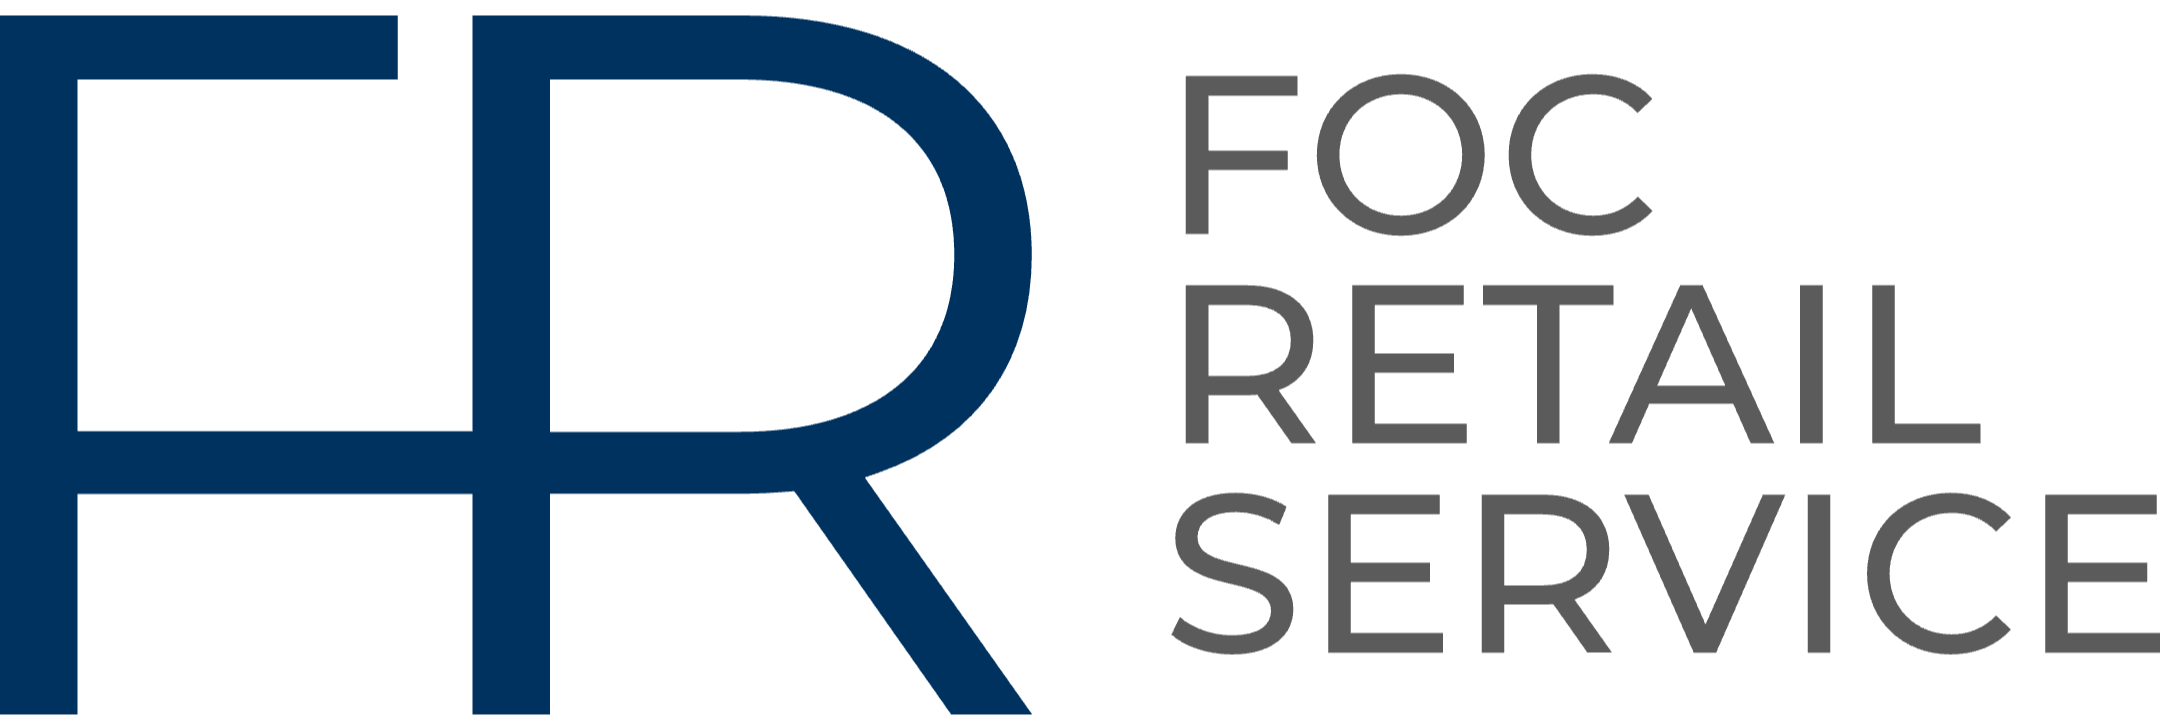 FOC Retail Service GmbH - Outlet & Center Management